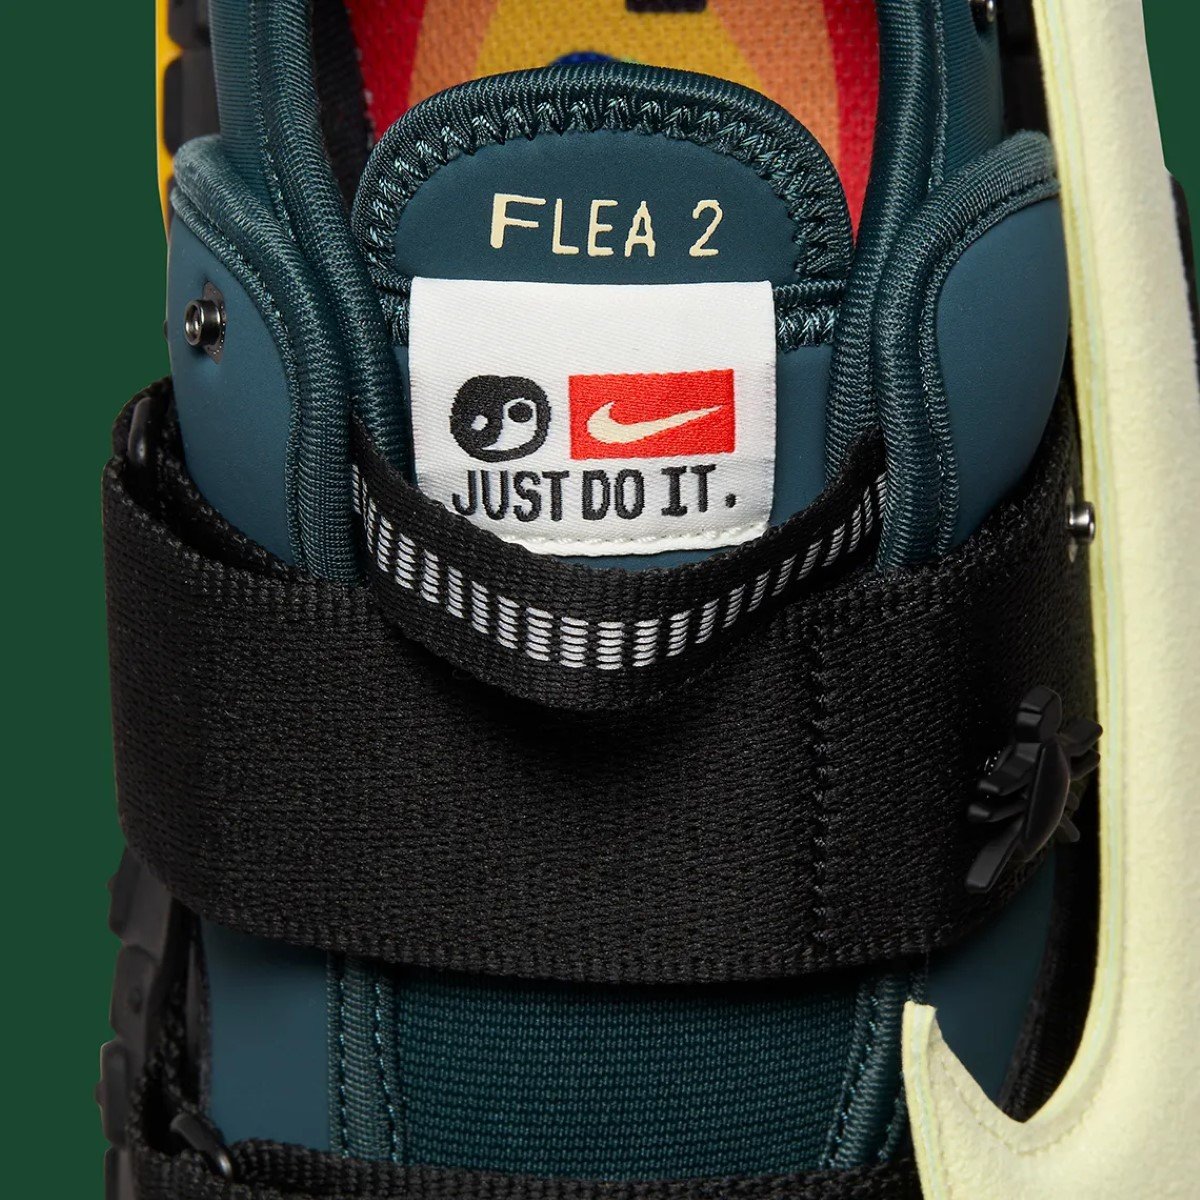 Images officielles de la CACTUS PLANT FLEA MARKET x Nike Flea 2 "Faded Spruce" dévoilées